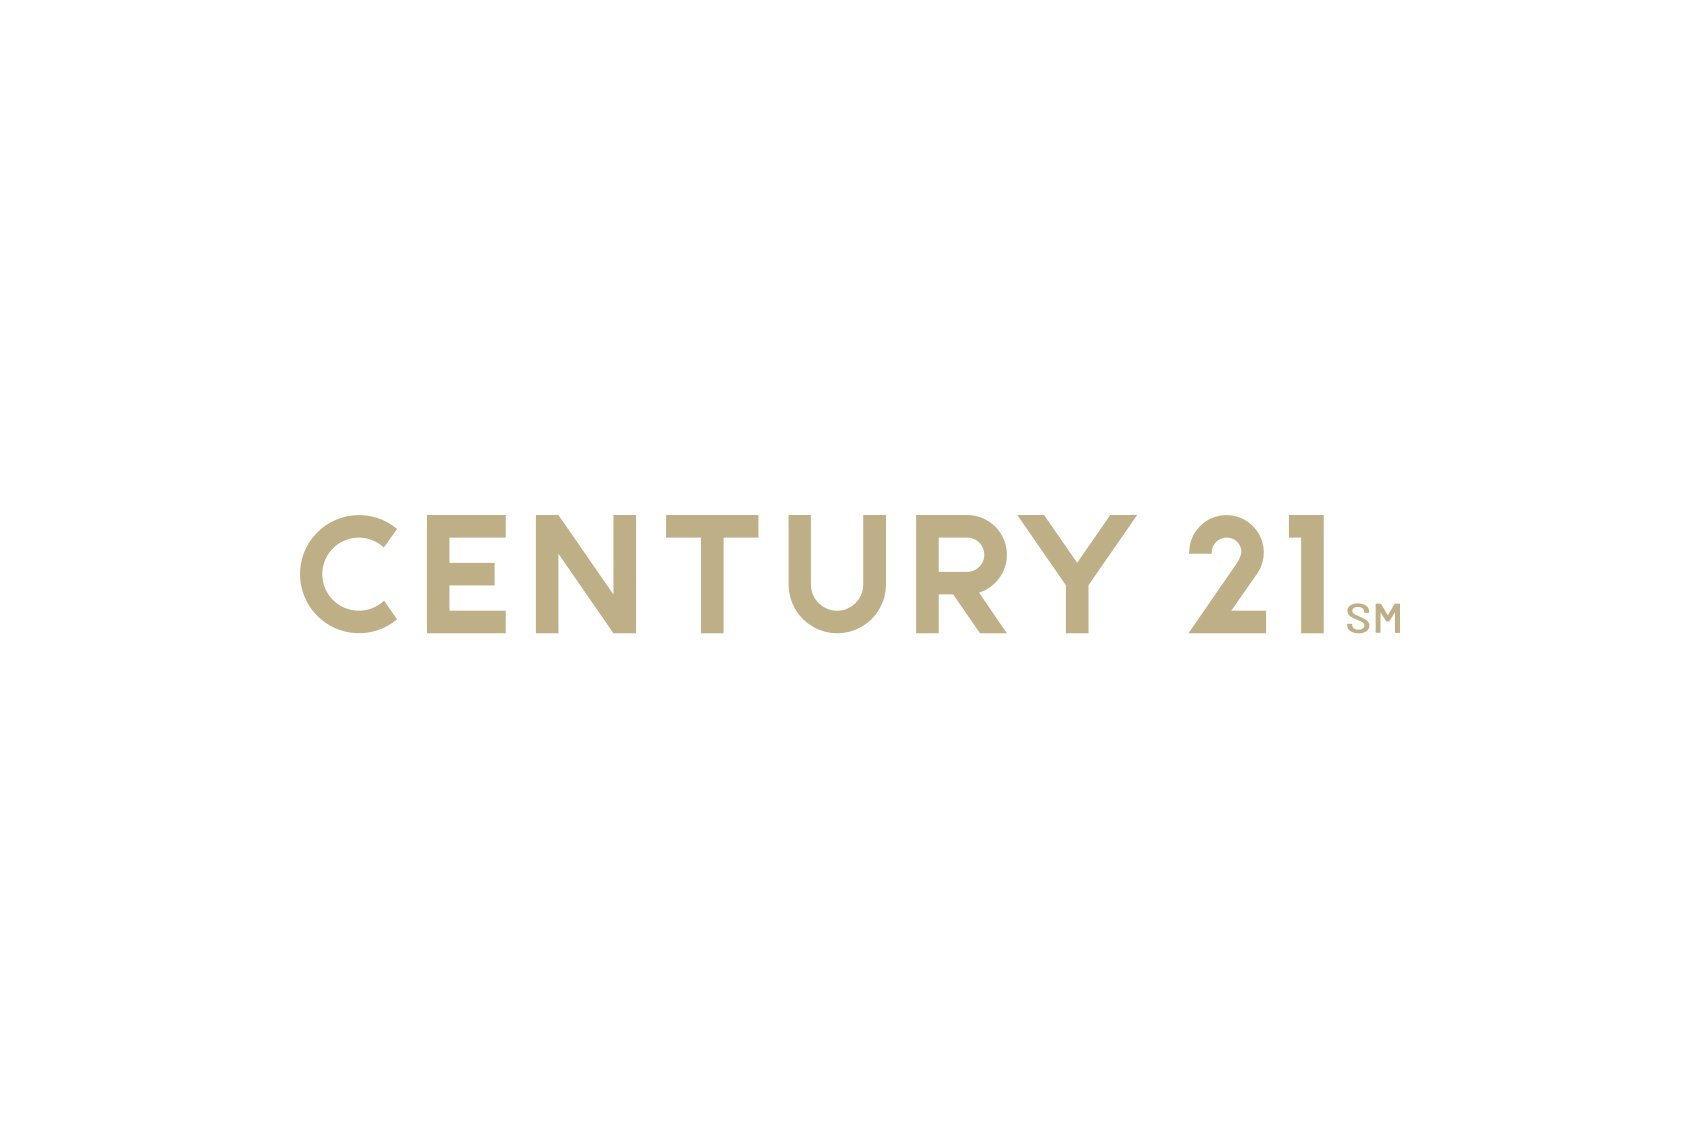 real-estate-logo-century-21